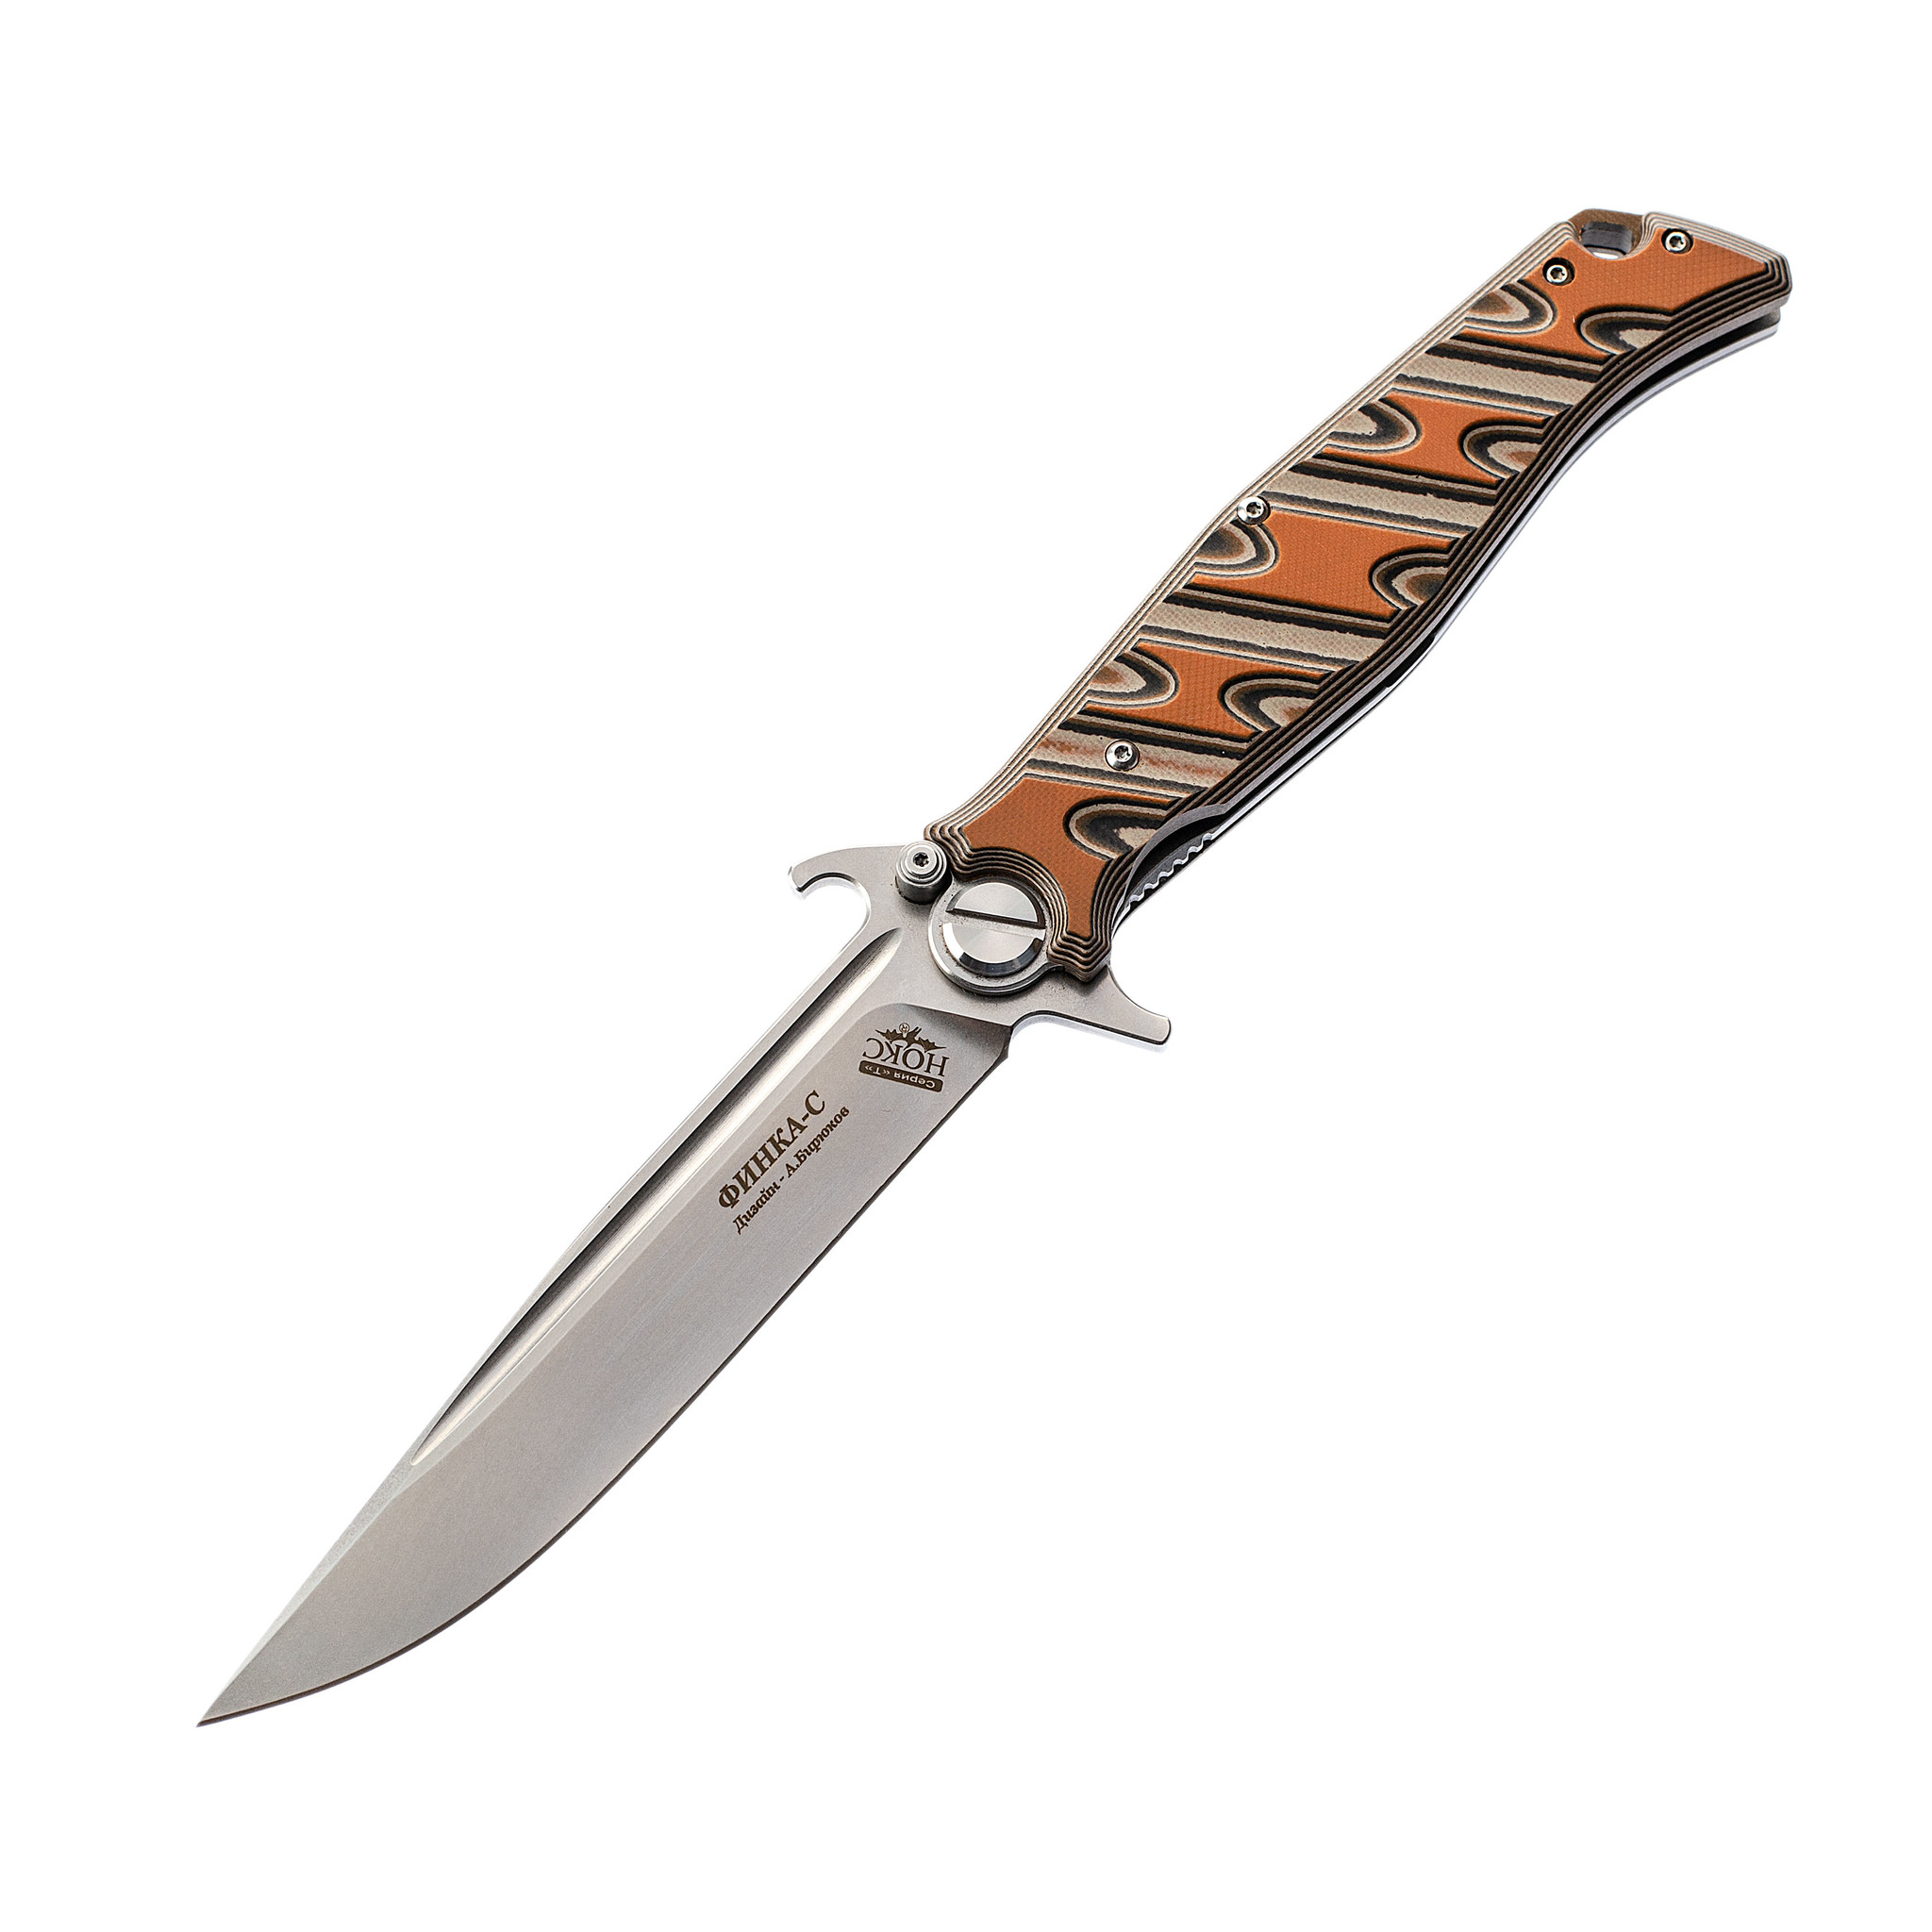 Складной нож Финка С НОКС, сталь D2, рукоять оранжевая G10 складной нож bestech junzi bt1809a сталь cpm s35vn рукоять титан